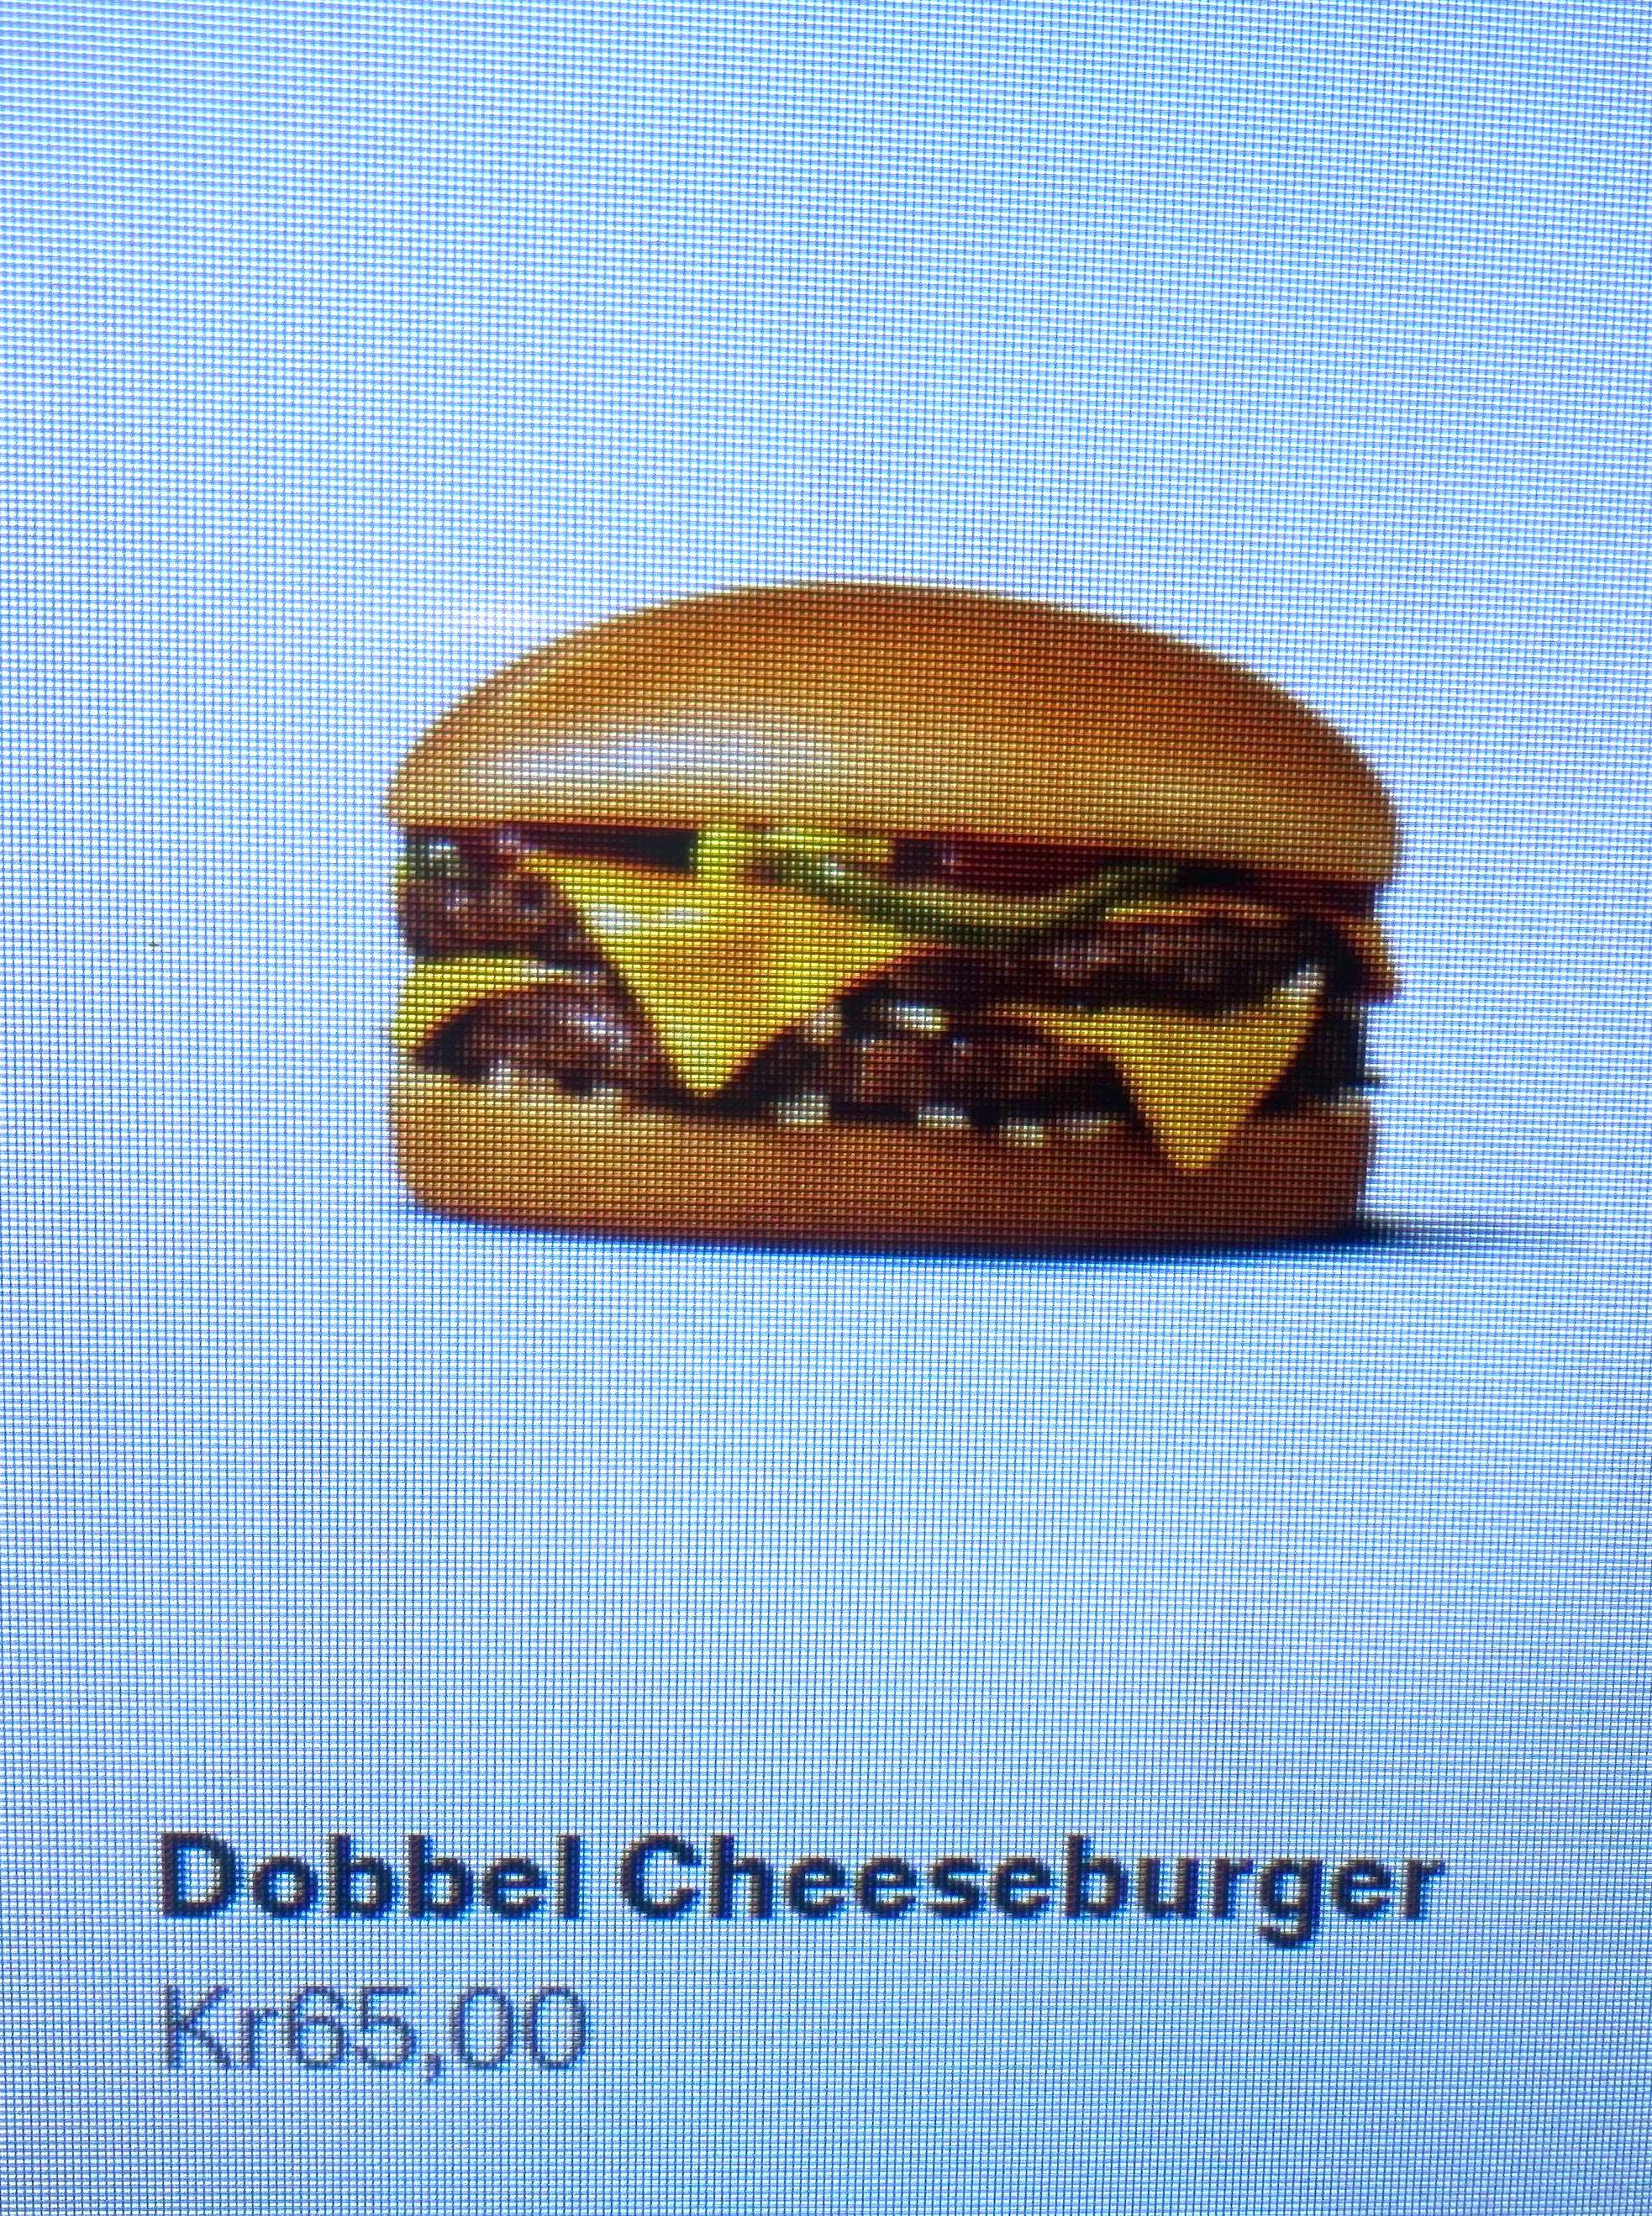 Prisen på Dobbel Cheeseburger i Storgata lørdag 4. mars etter midnatt.